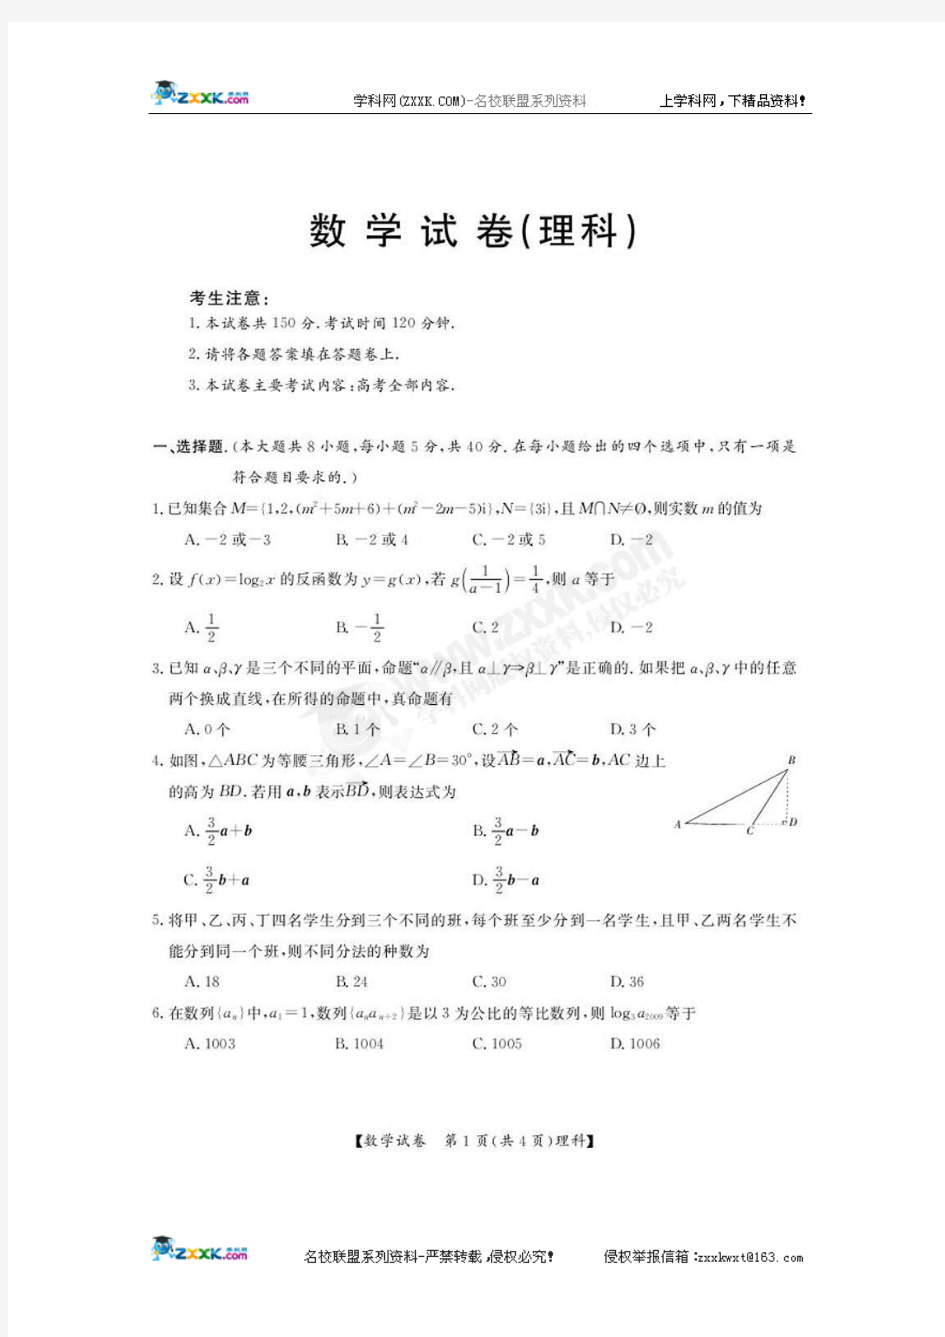 广东省2010届高考样本分析考试(全省联考)数学理科试题(扫描版)